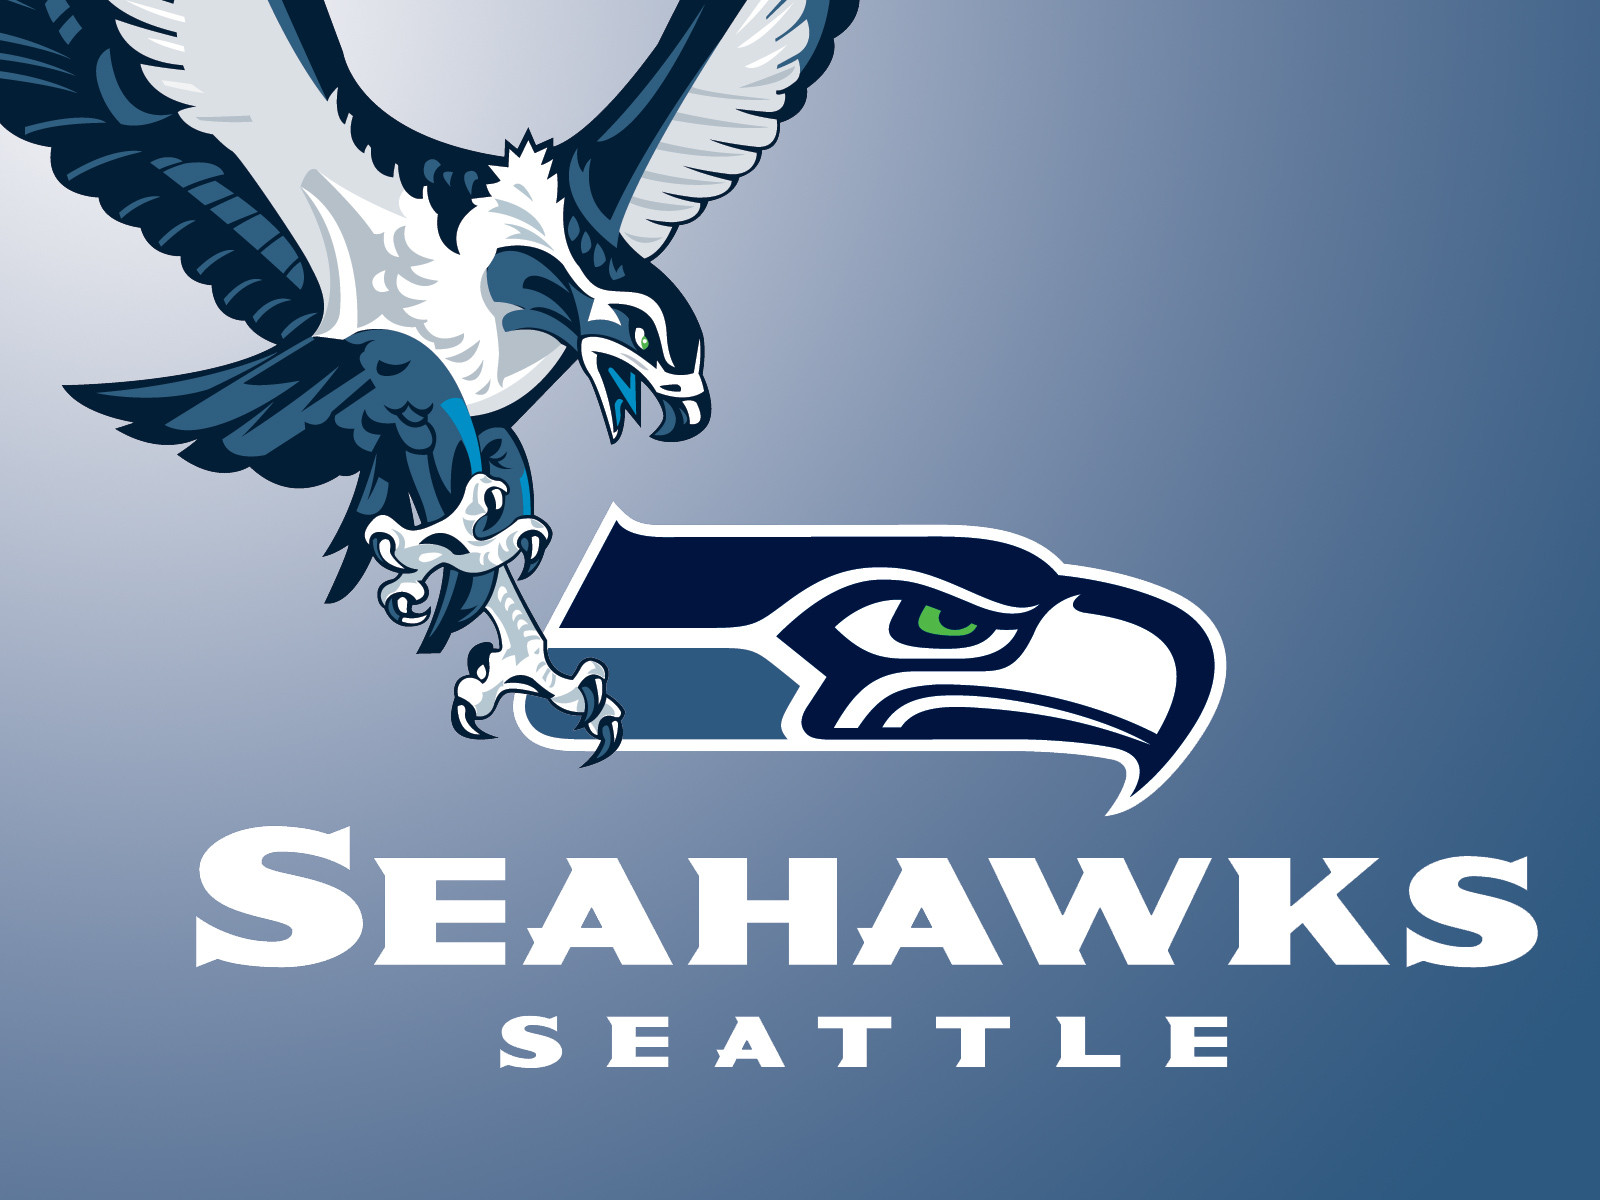 Seattle Seahawks   Hd Wallpapers   Seattle Seahawks Superbowl Winners